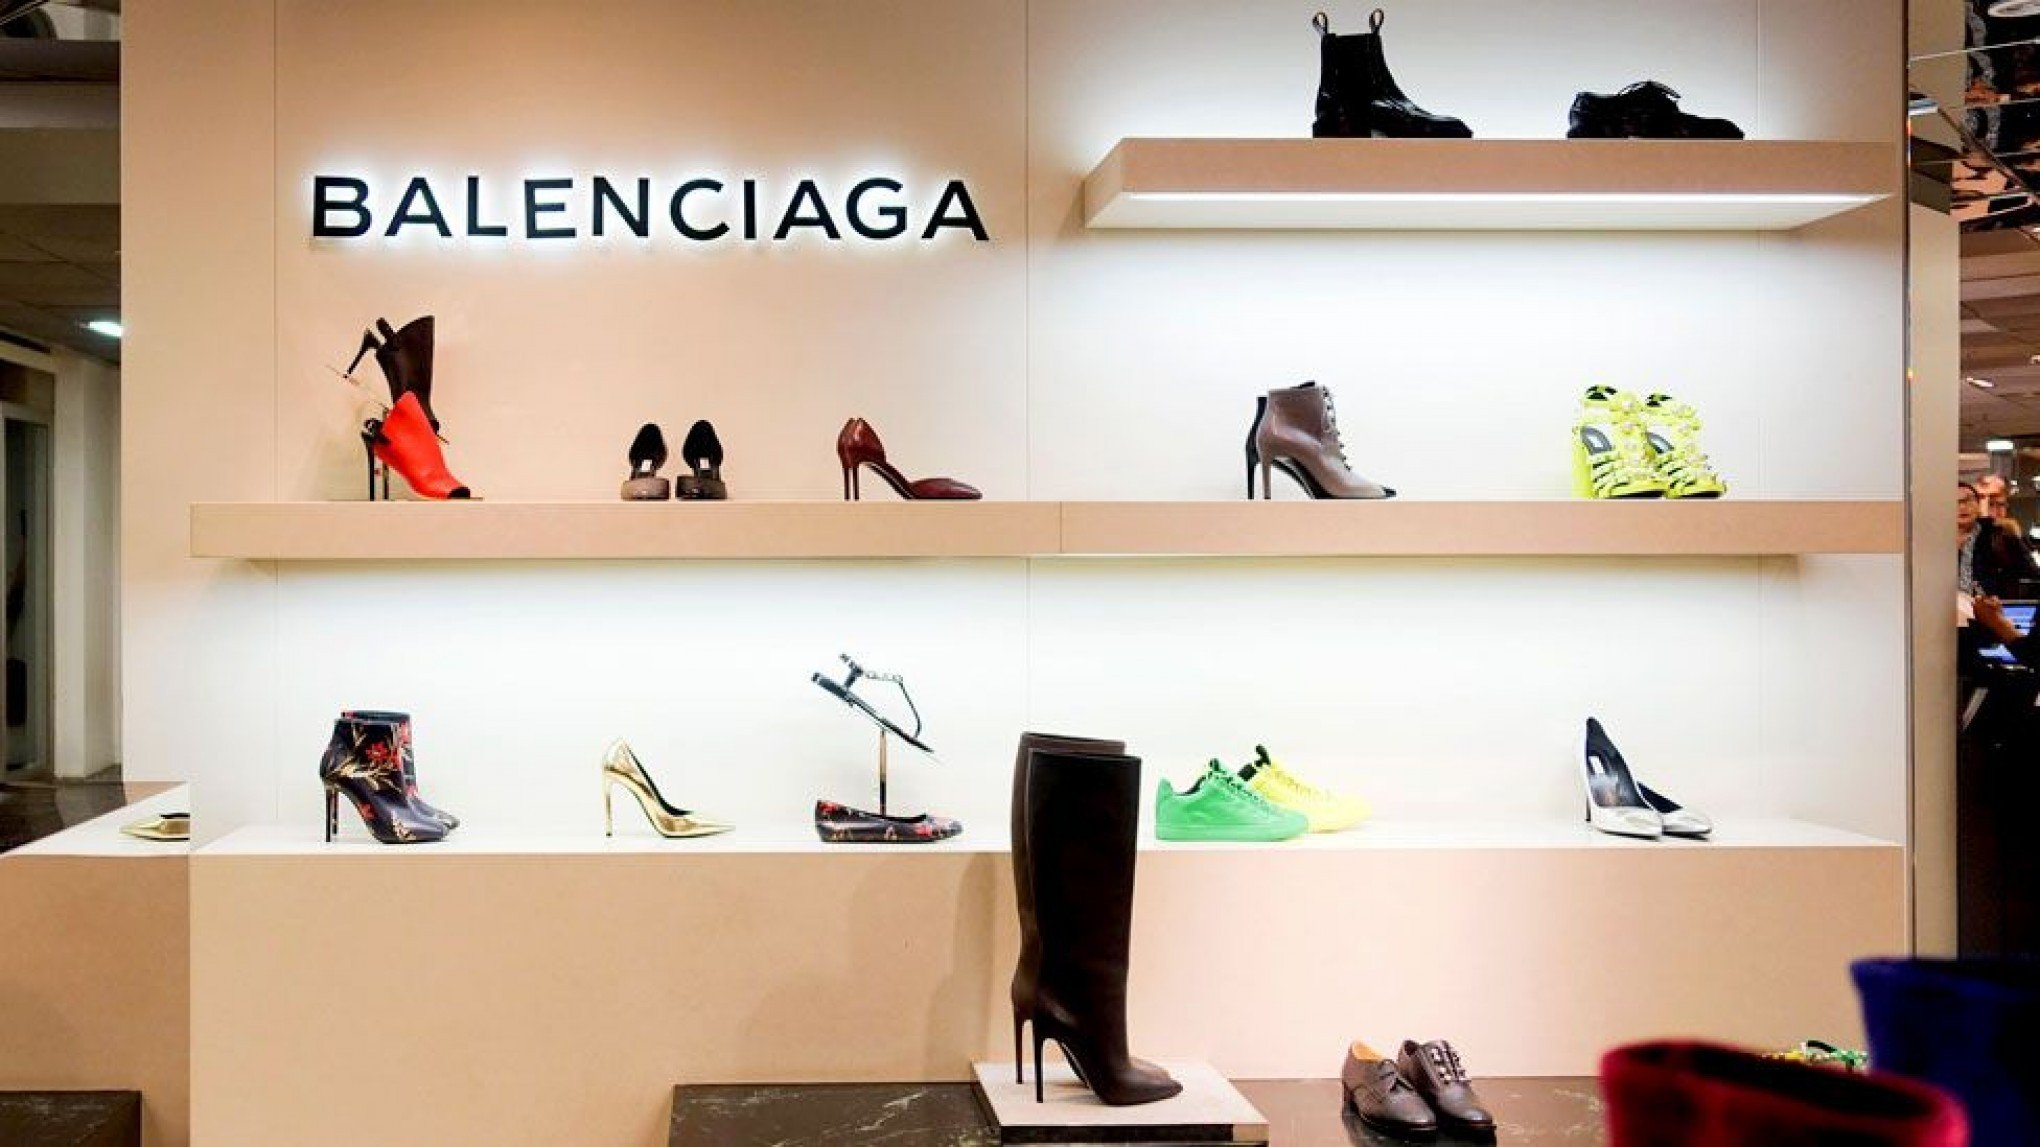 Balenciaga abre loja no Brasil - Jornal Exclusivo